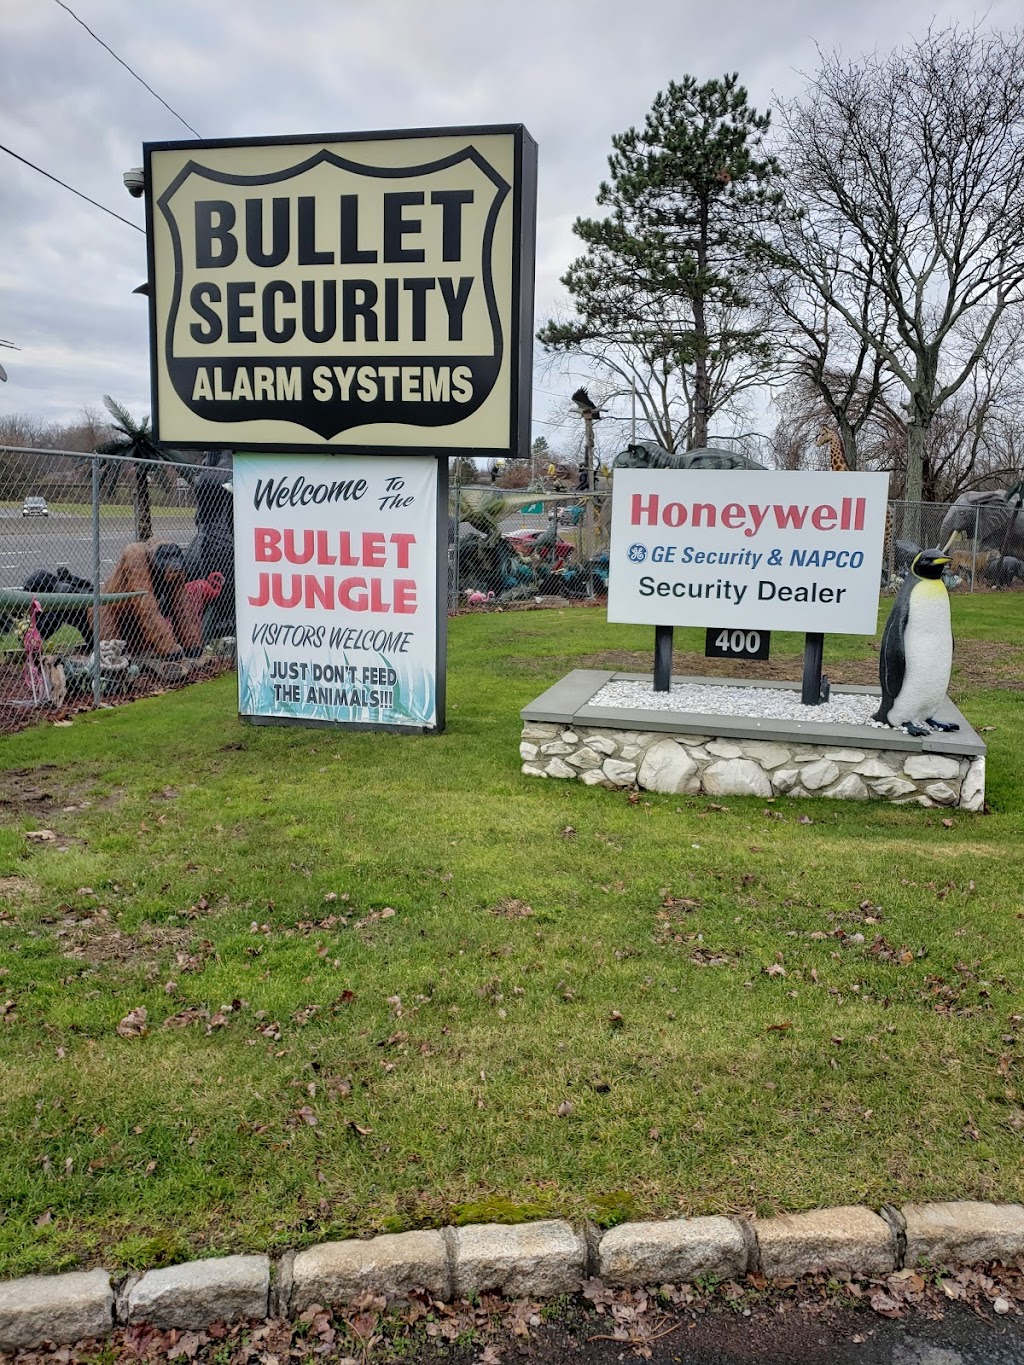 Bullet Security | 400 NY-59, Nanuet, NY 10954 | Phone: (845) 627-0300